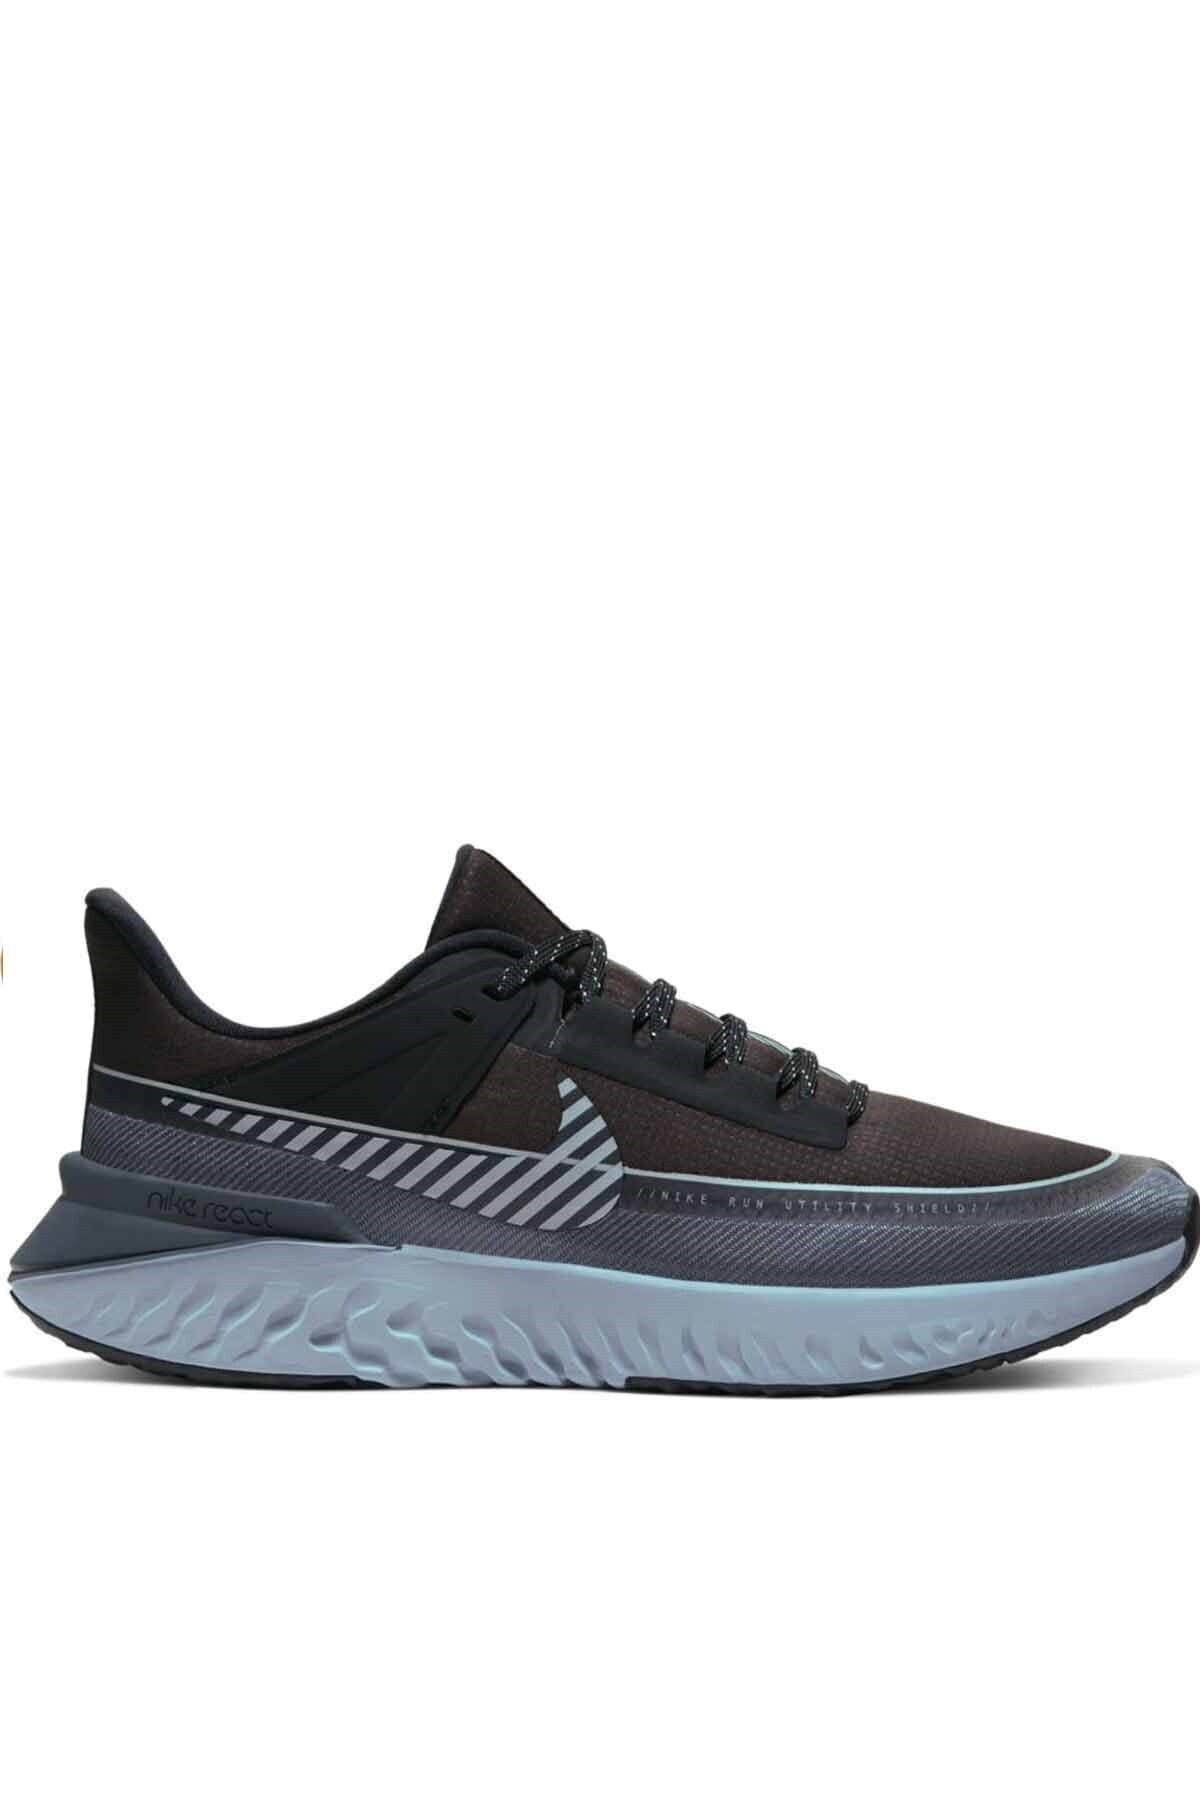 Nike Legend React 2 Shıeld Erkek Yürüyüş Koşu Ayakkabı Bq3382-001